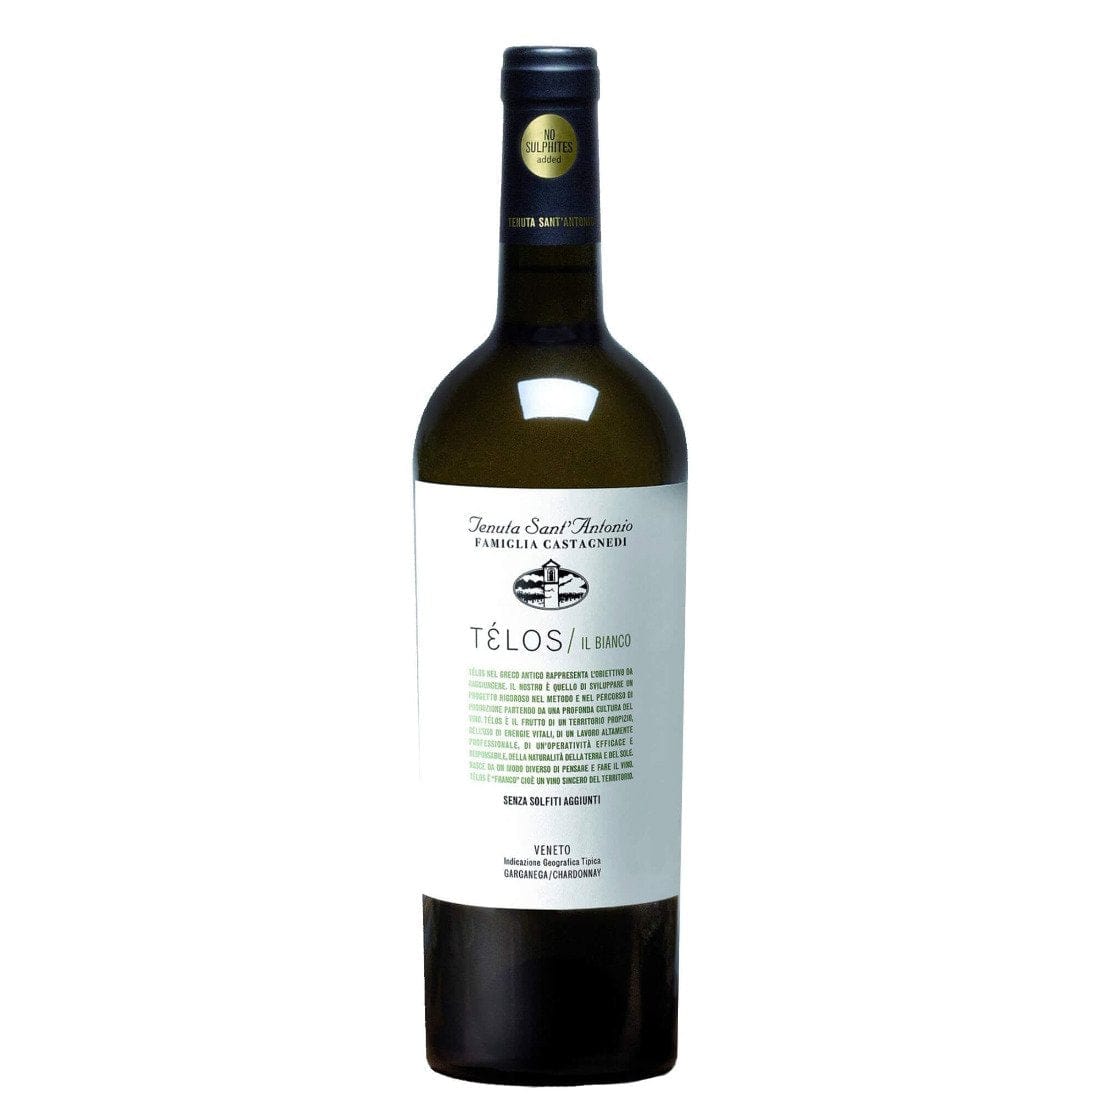 Il Bianco 2021 Igt Veneto Garganega-Chardonnay - Telos Tenuta Sant'Antonio-Vinolog24.com